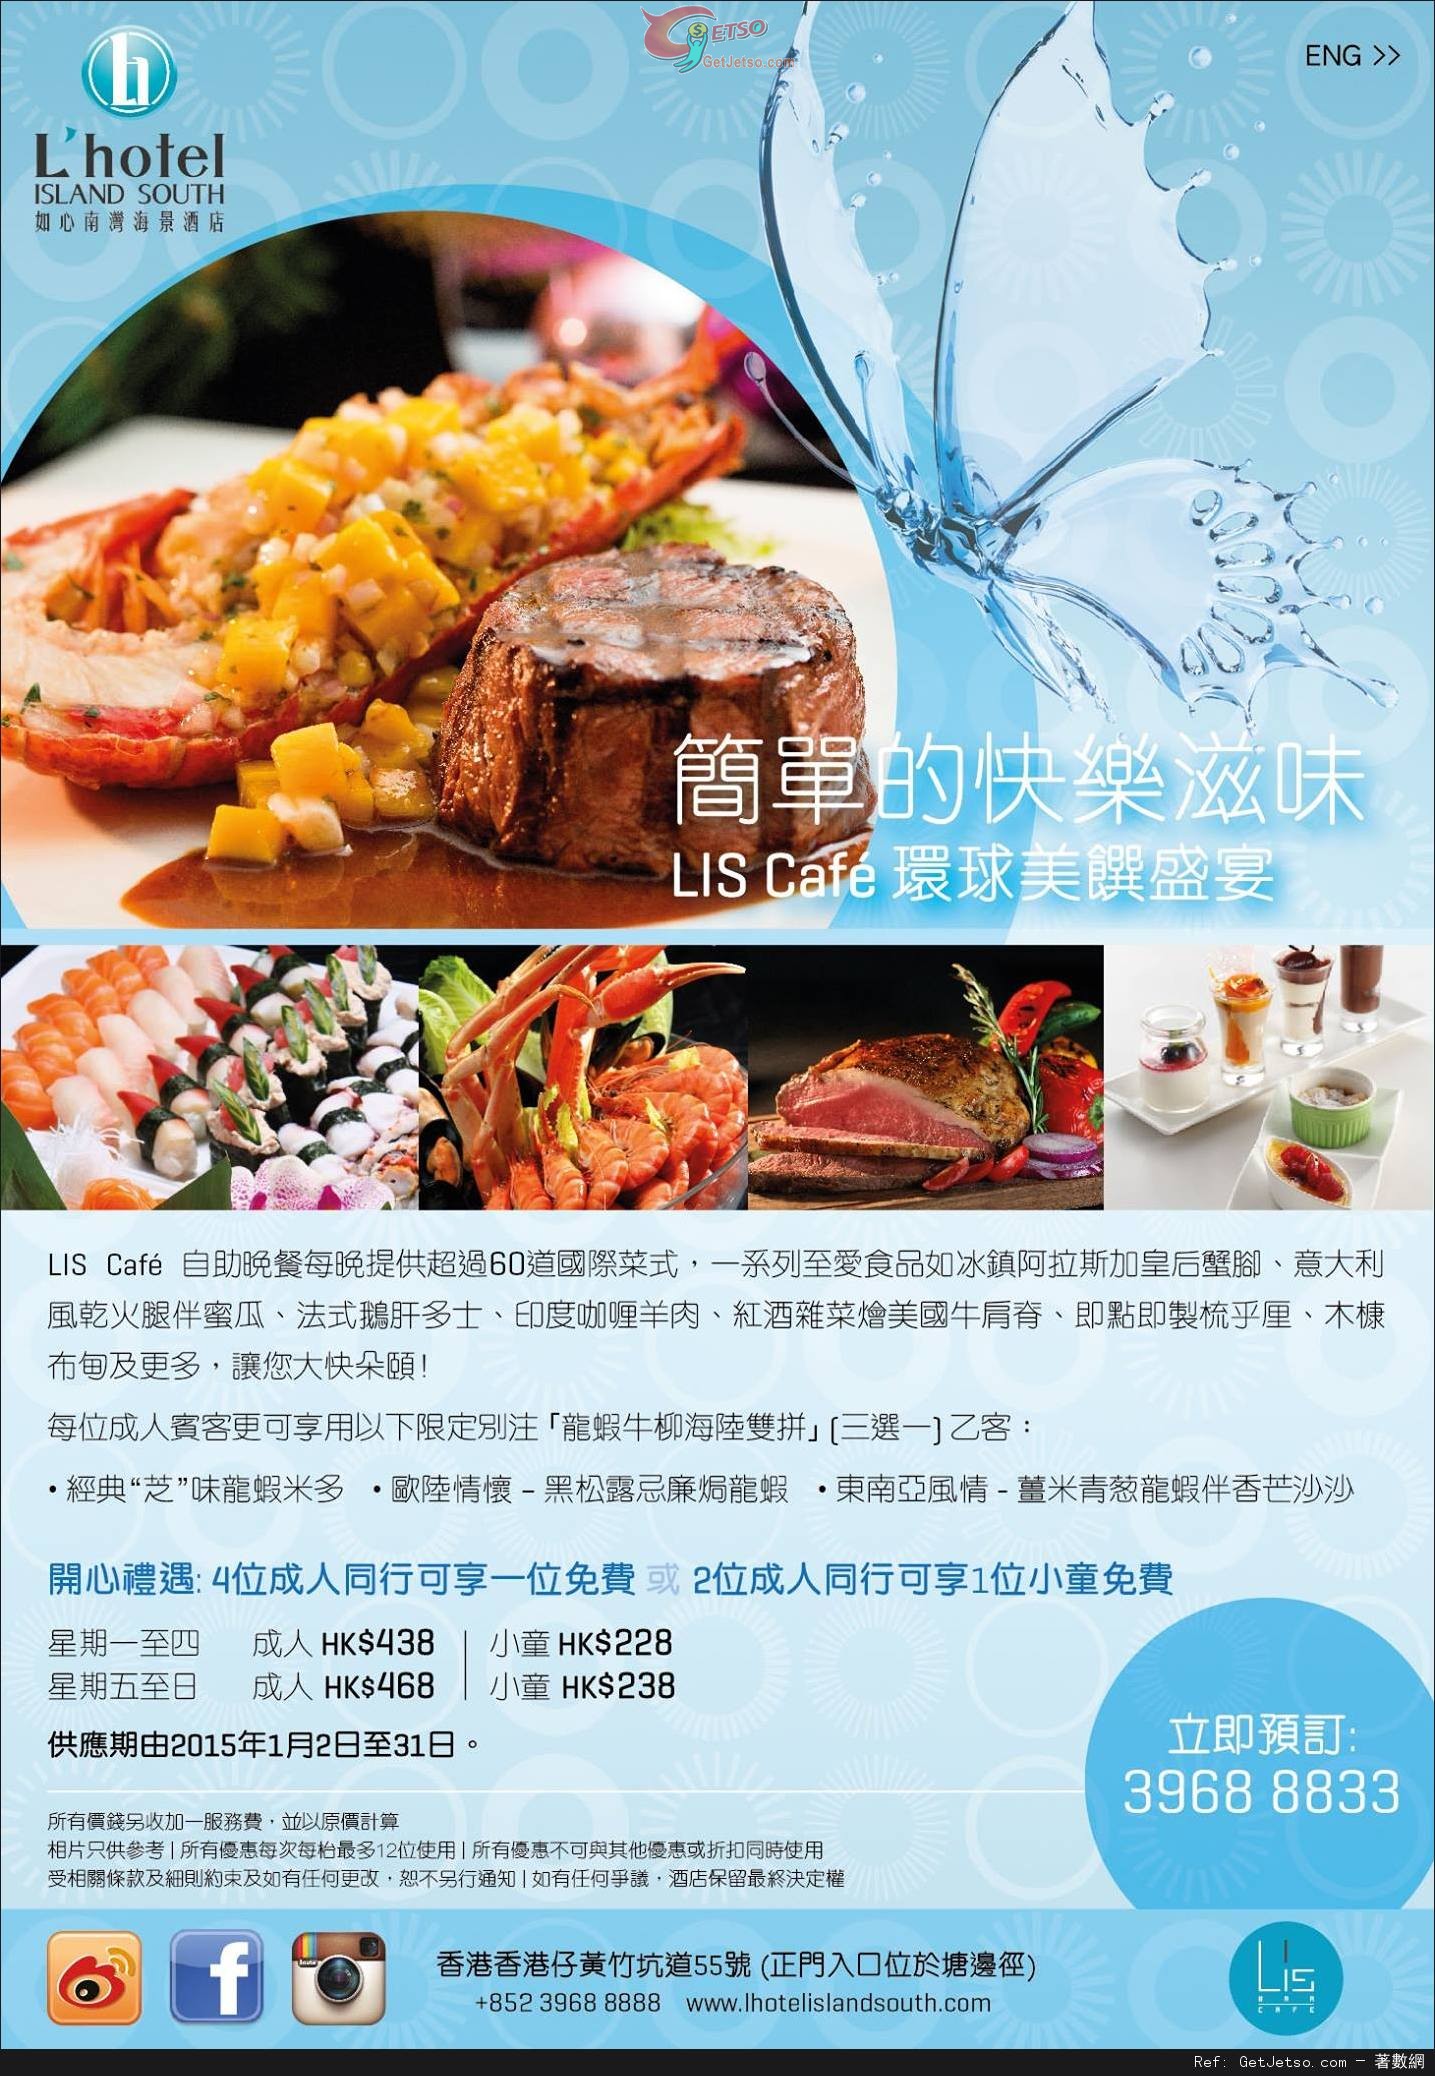 如心南灣海景酒店LIS Café自助晚餐買三送一優惠(至15年1月31日)圖片1